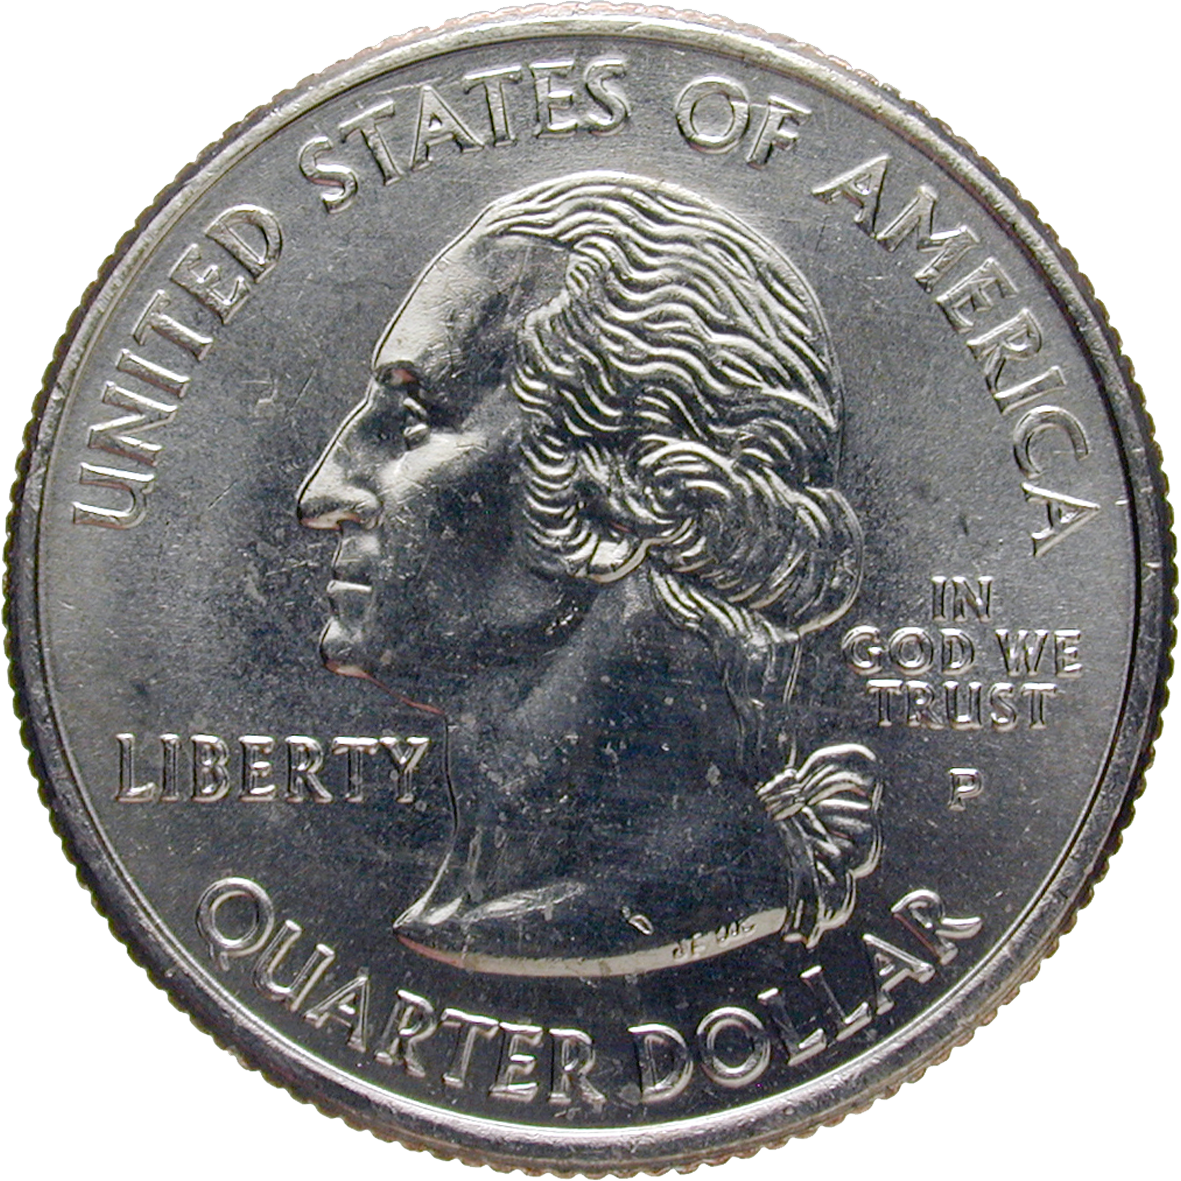 Vereinigte Staaten von Amerika, Quarter Dollar 2006  (obverse)